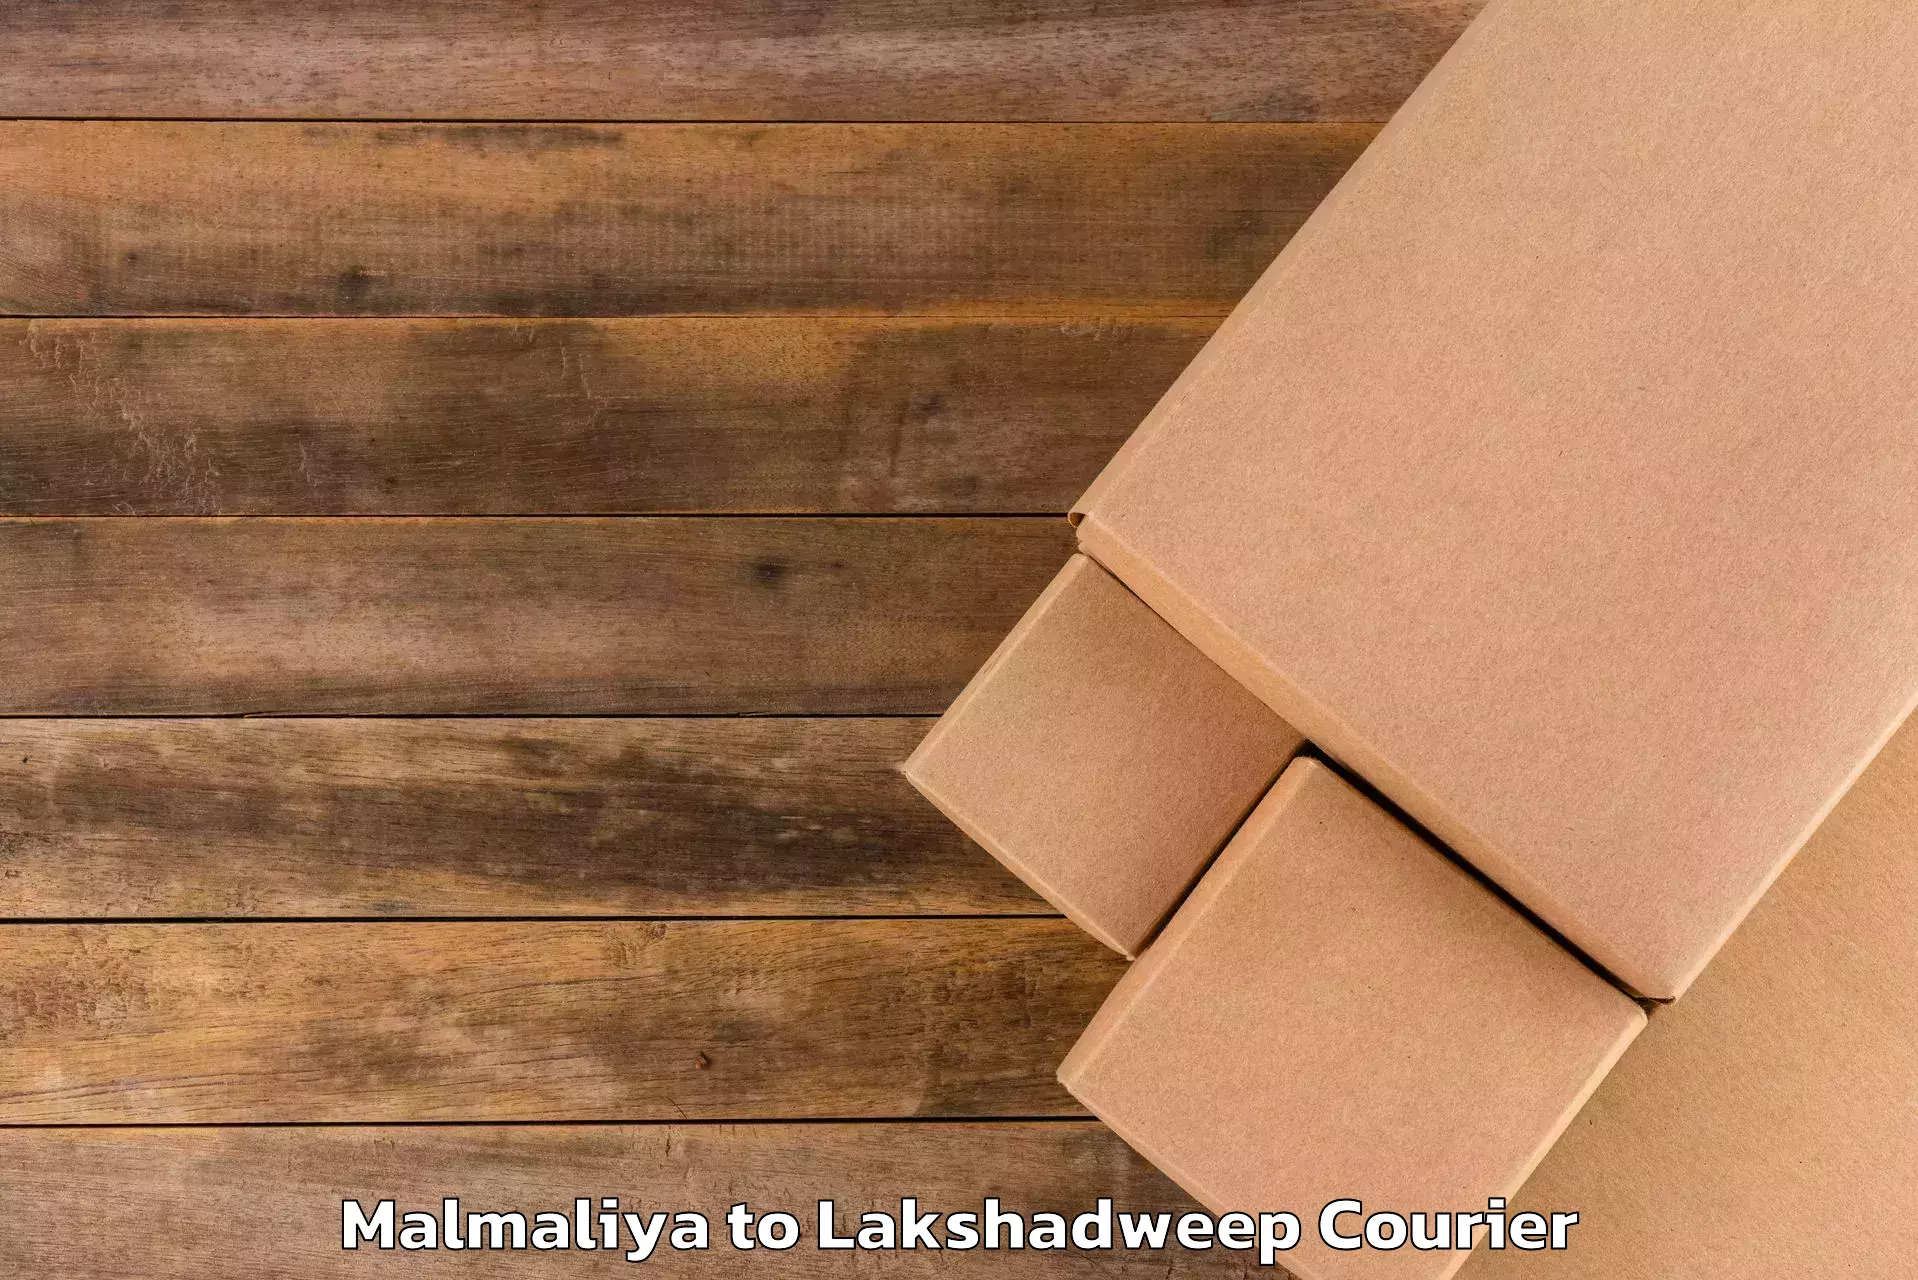 Baggage delivery management Malmaliya to Lakshadweep